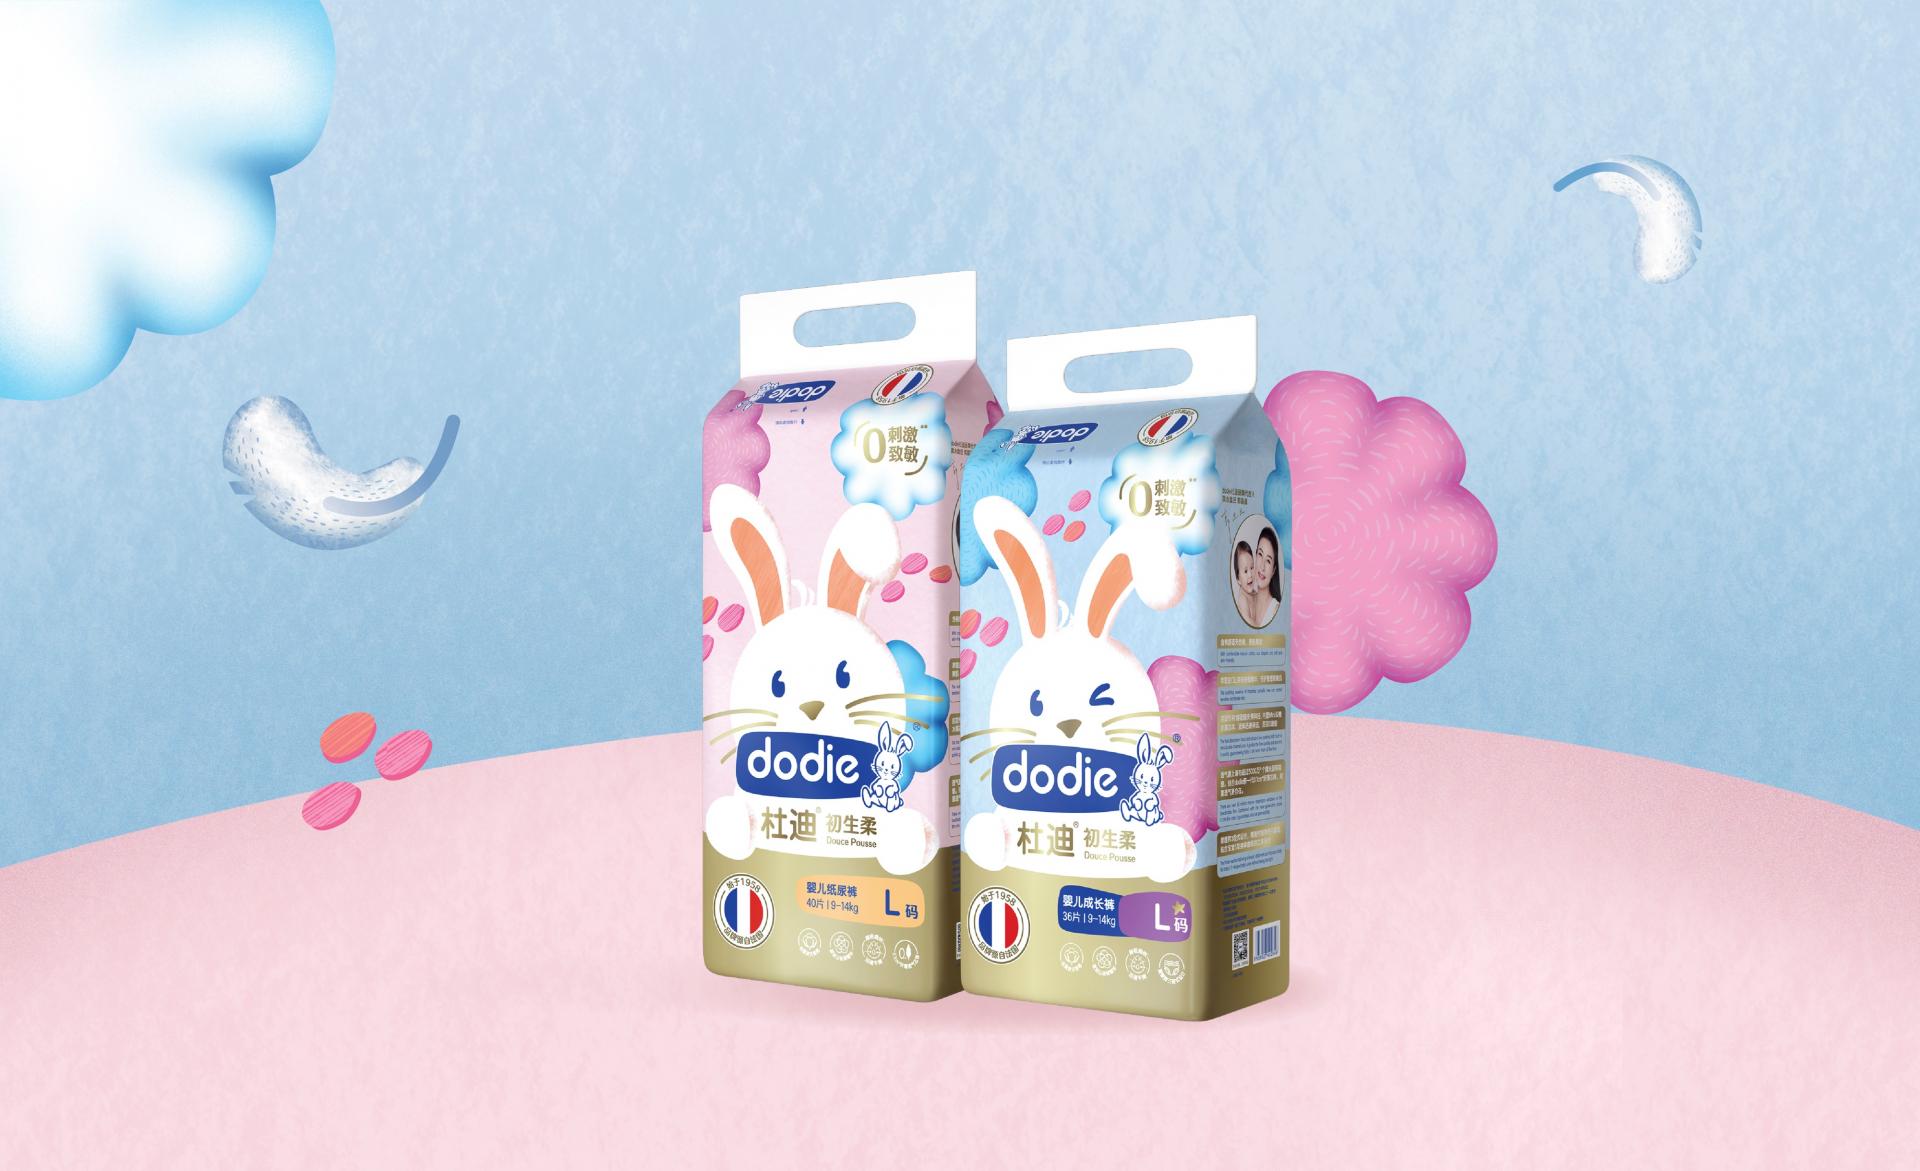 Dodie Packaging Design